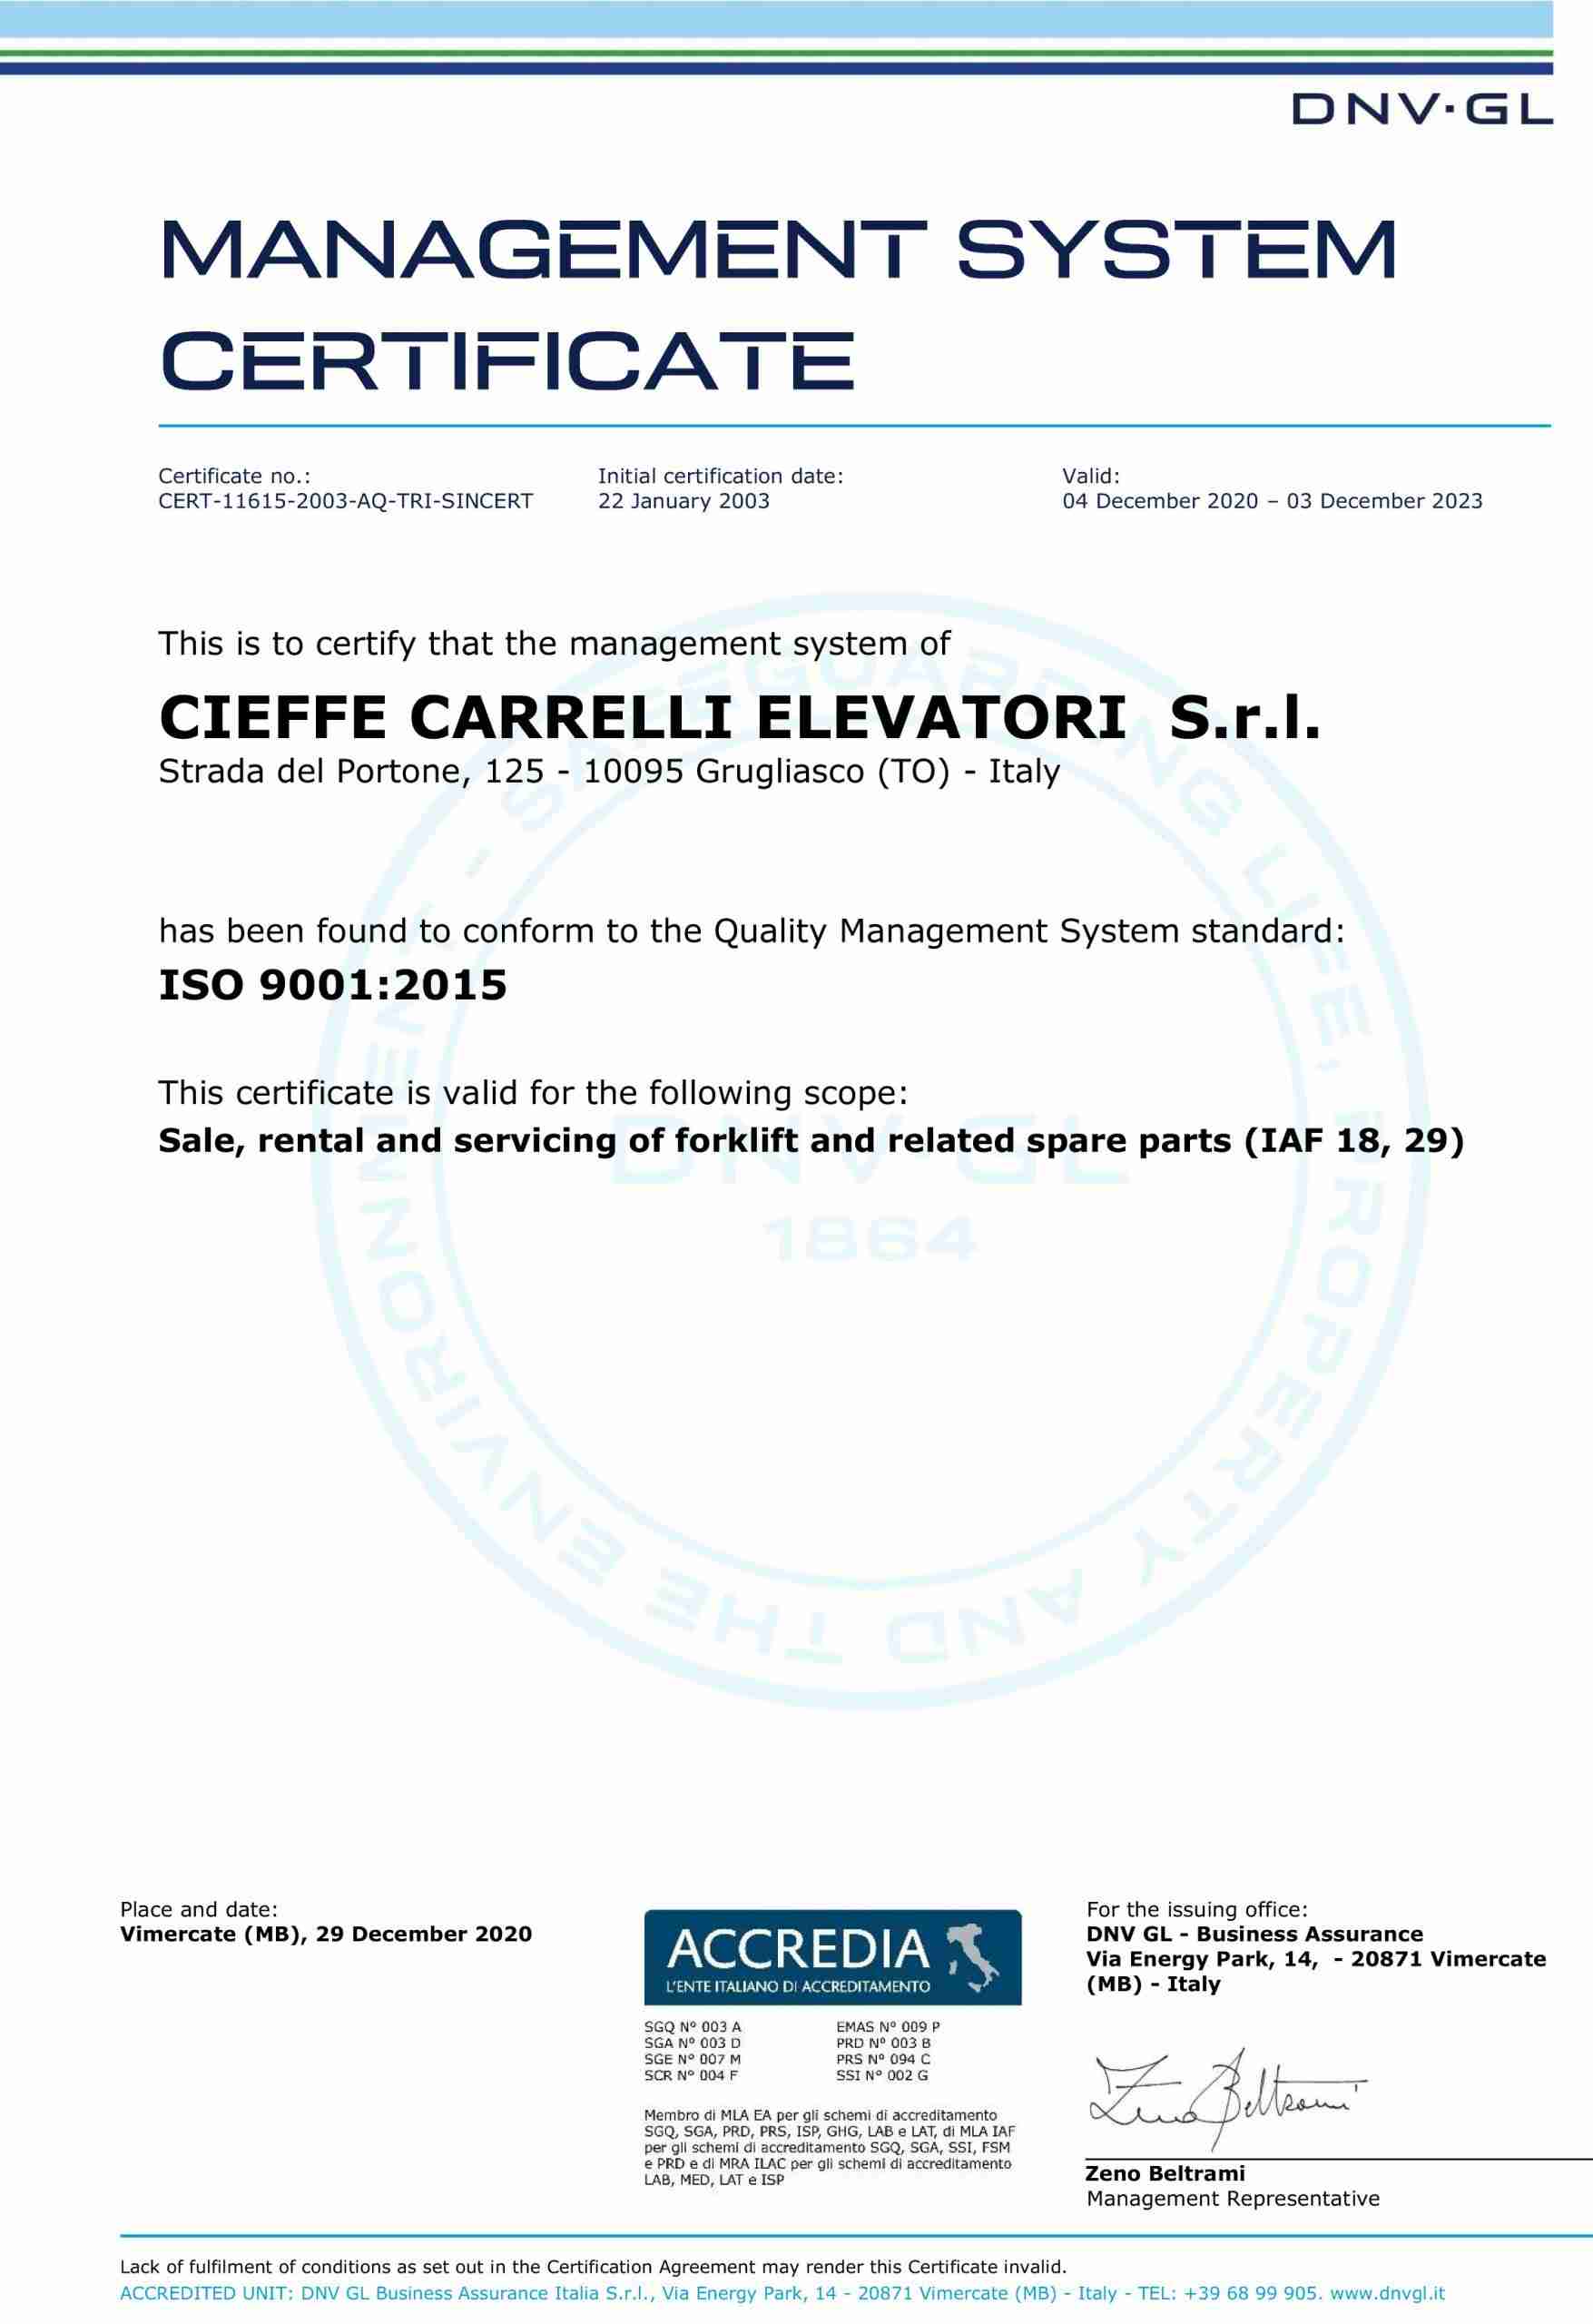 dvn-gl certificazione iso 9001/2015 - cieffe carrelli